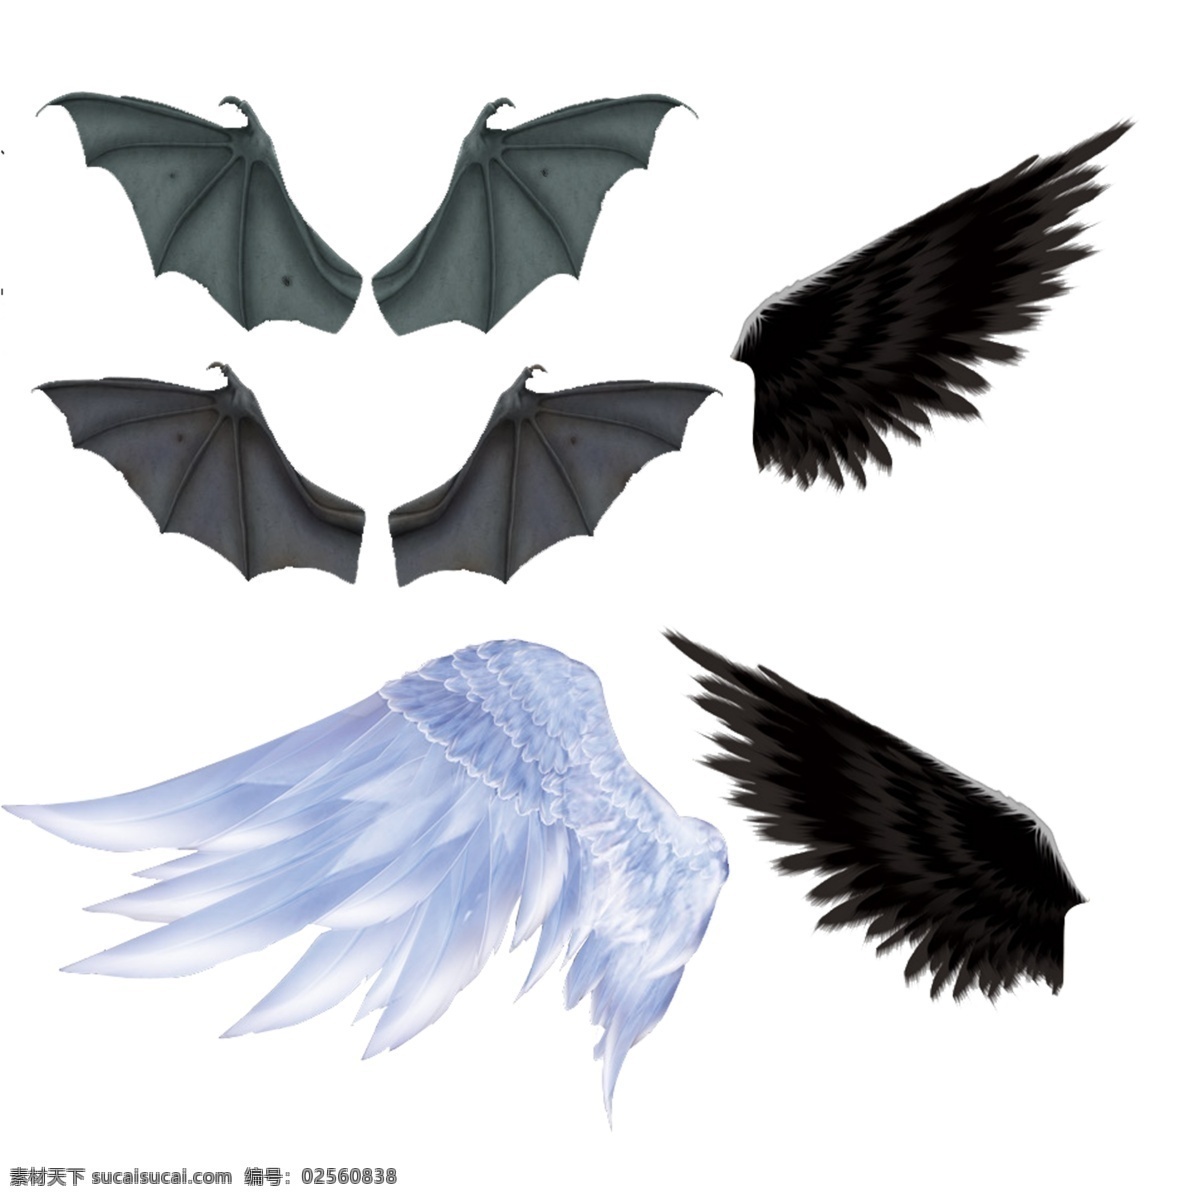 恶魔翅膀 天使翅膀 羽翼 蝙蝠翅膀 鸟翅膀 生物世界 鸟类